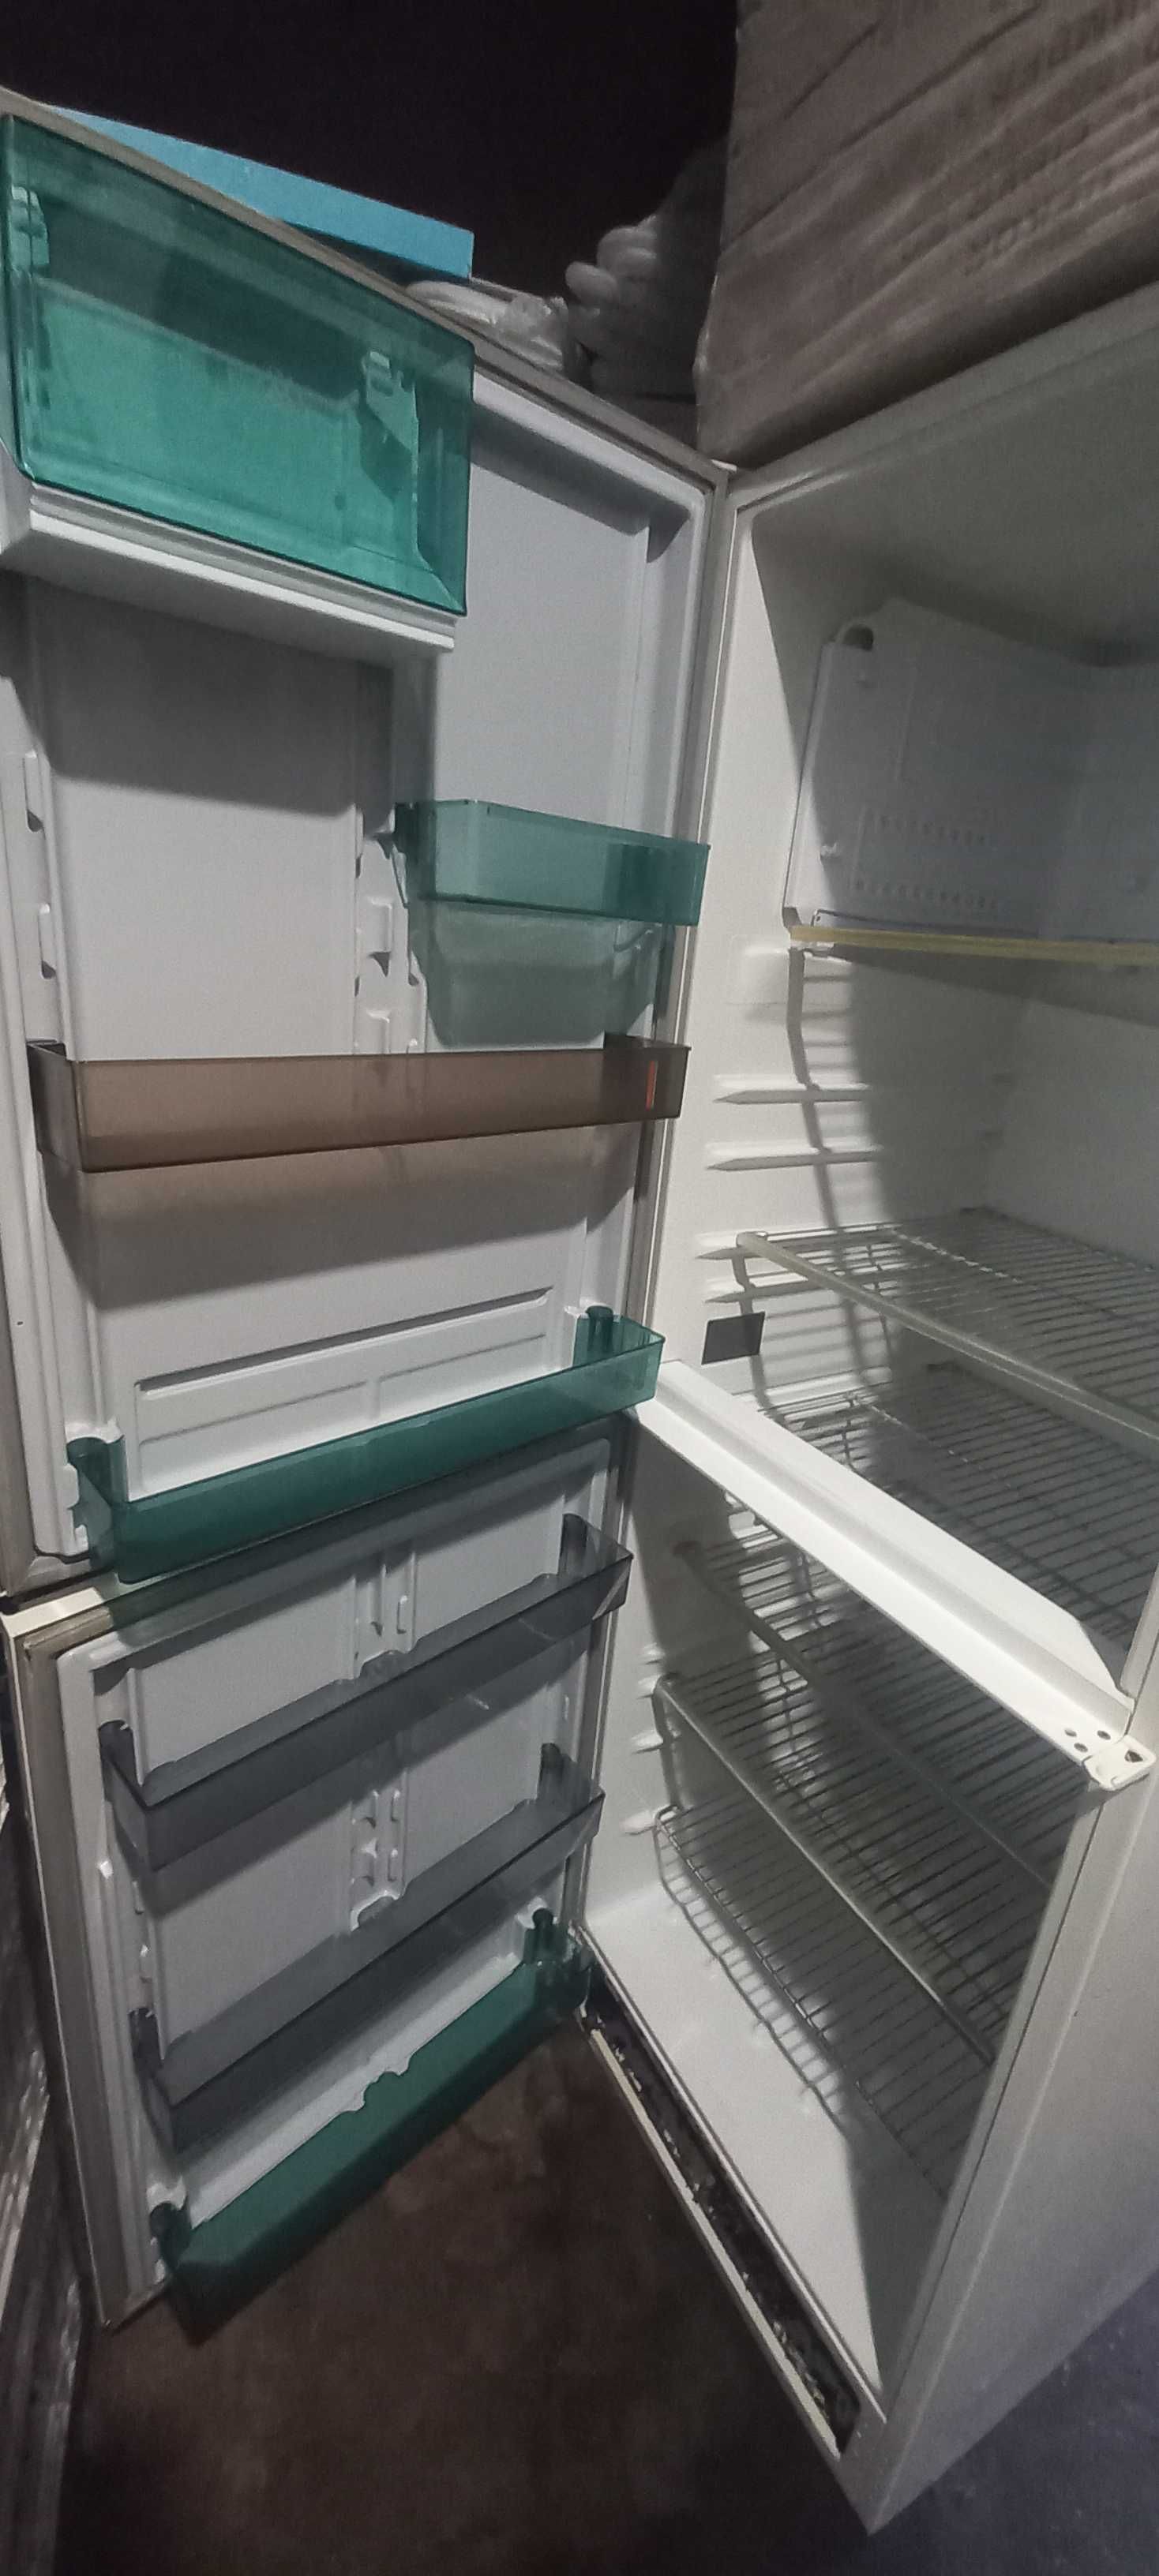 Хладилник с две врати